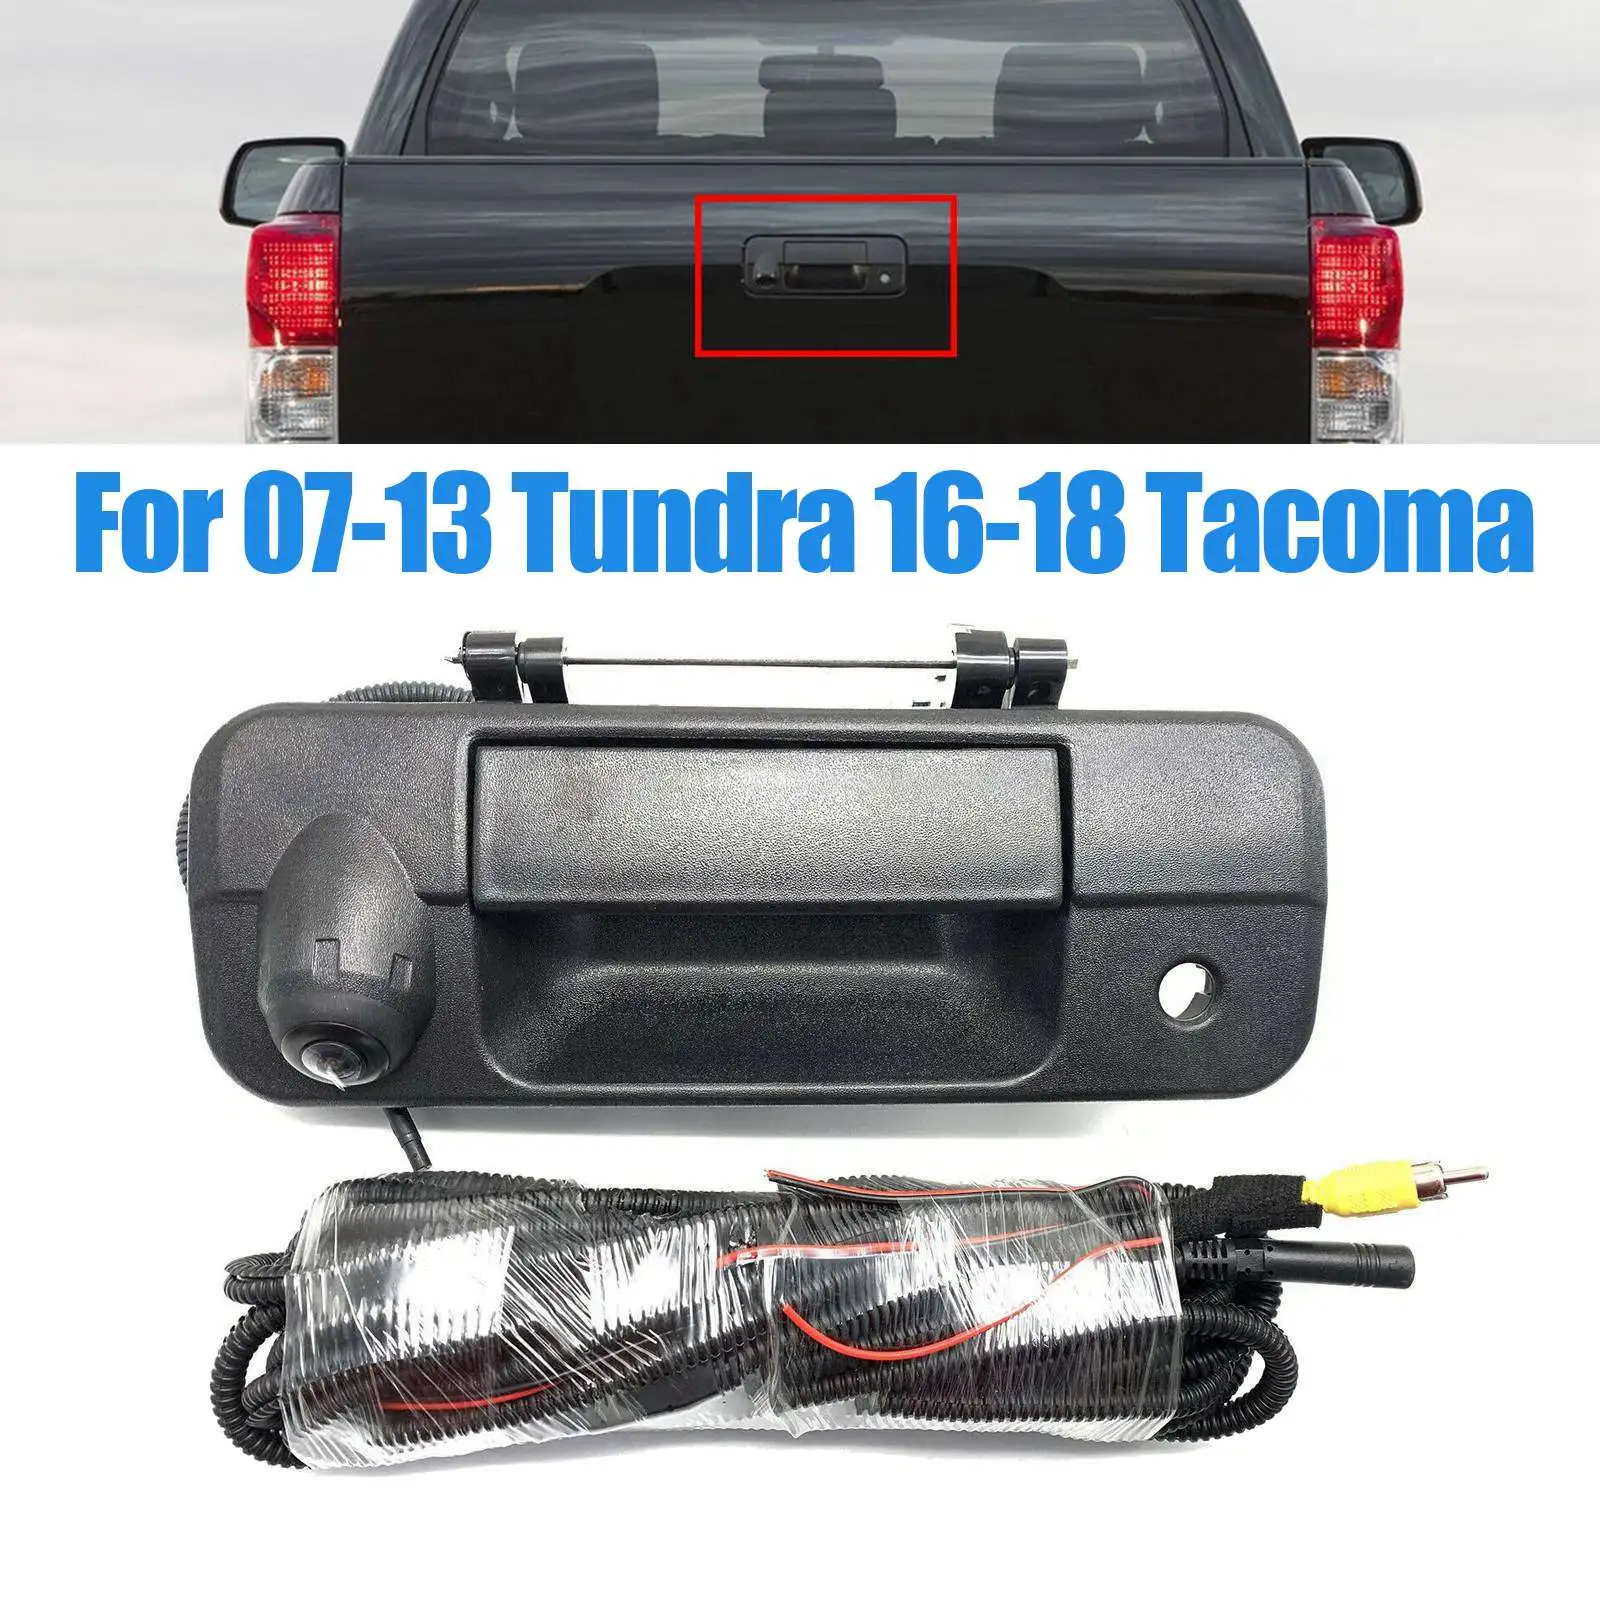 

Для Toyota -Tundra 07-13 / Tacoma 16-18, камера заднего вида с ручкой, камера заднего вида 690-0c051